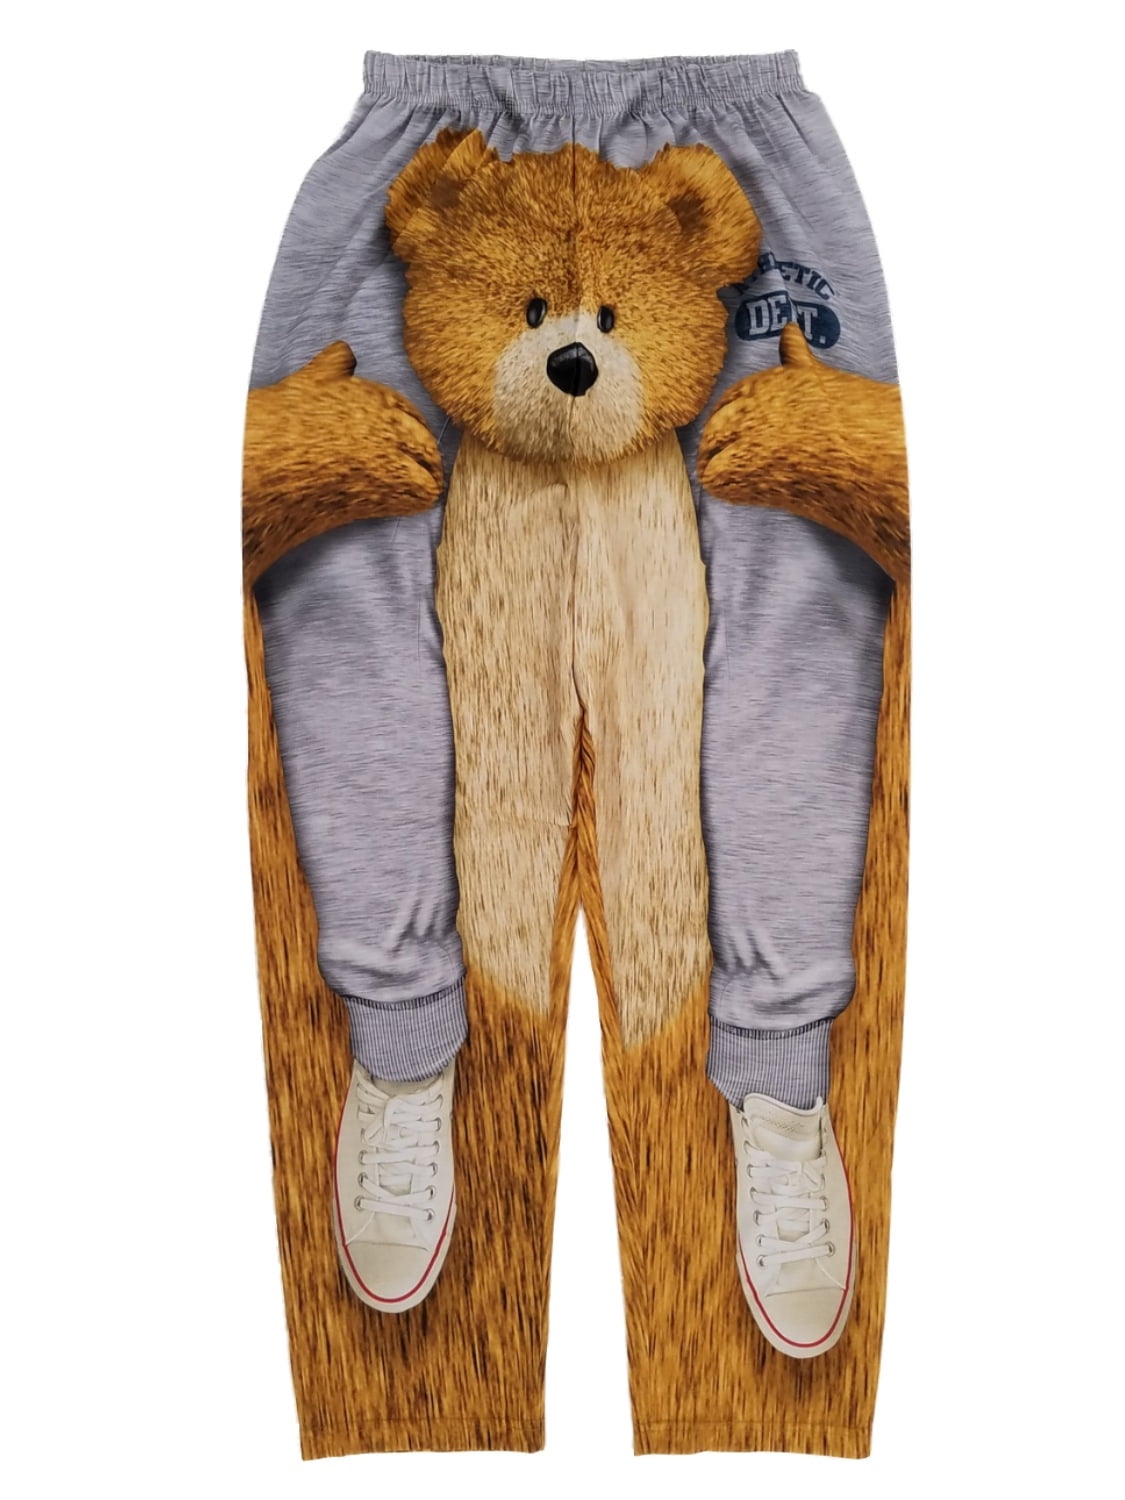 Mens Gray Teddy Bear Ride Lounge Pants Sleep Pants Pajama Bottoms